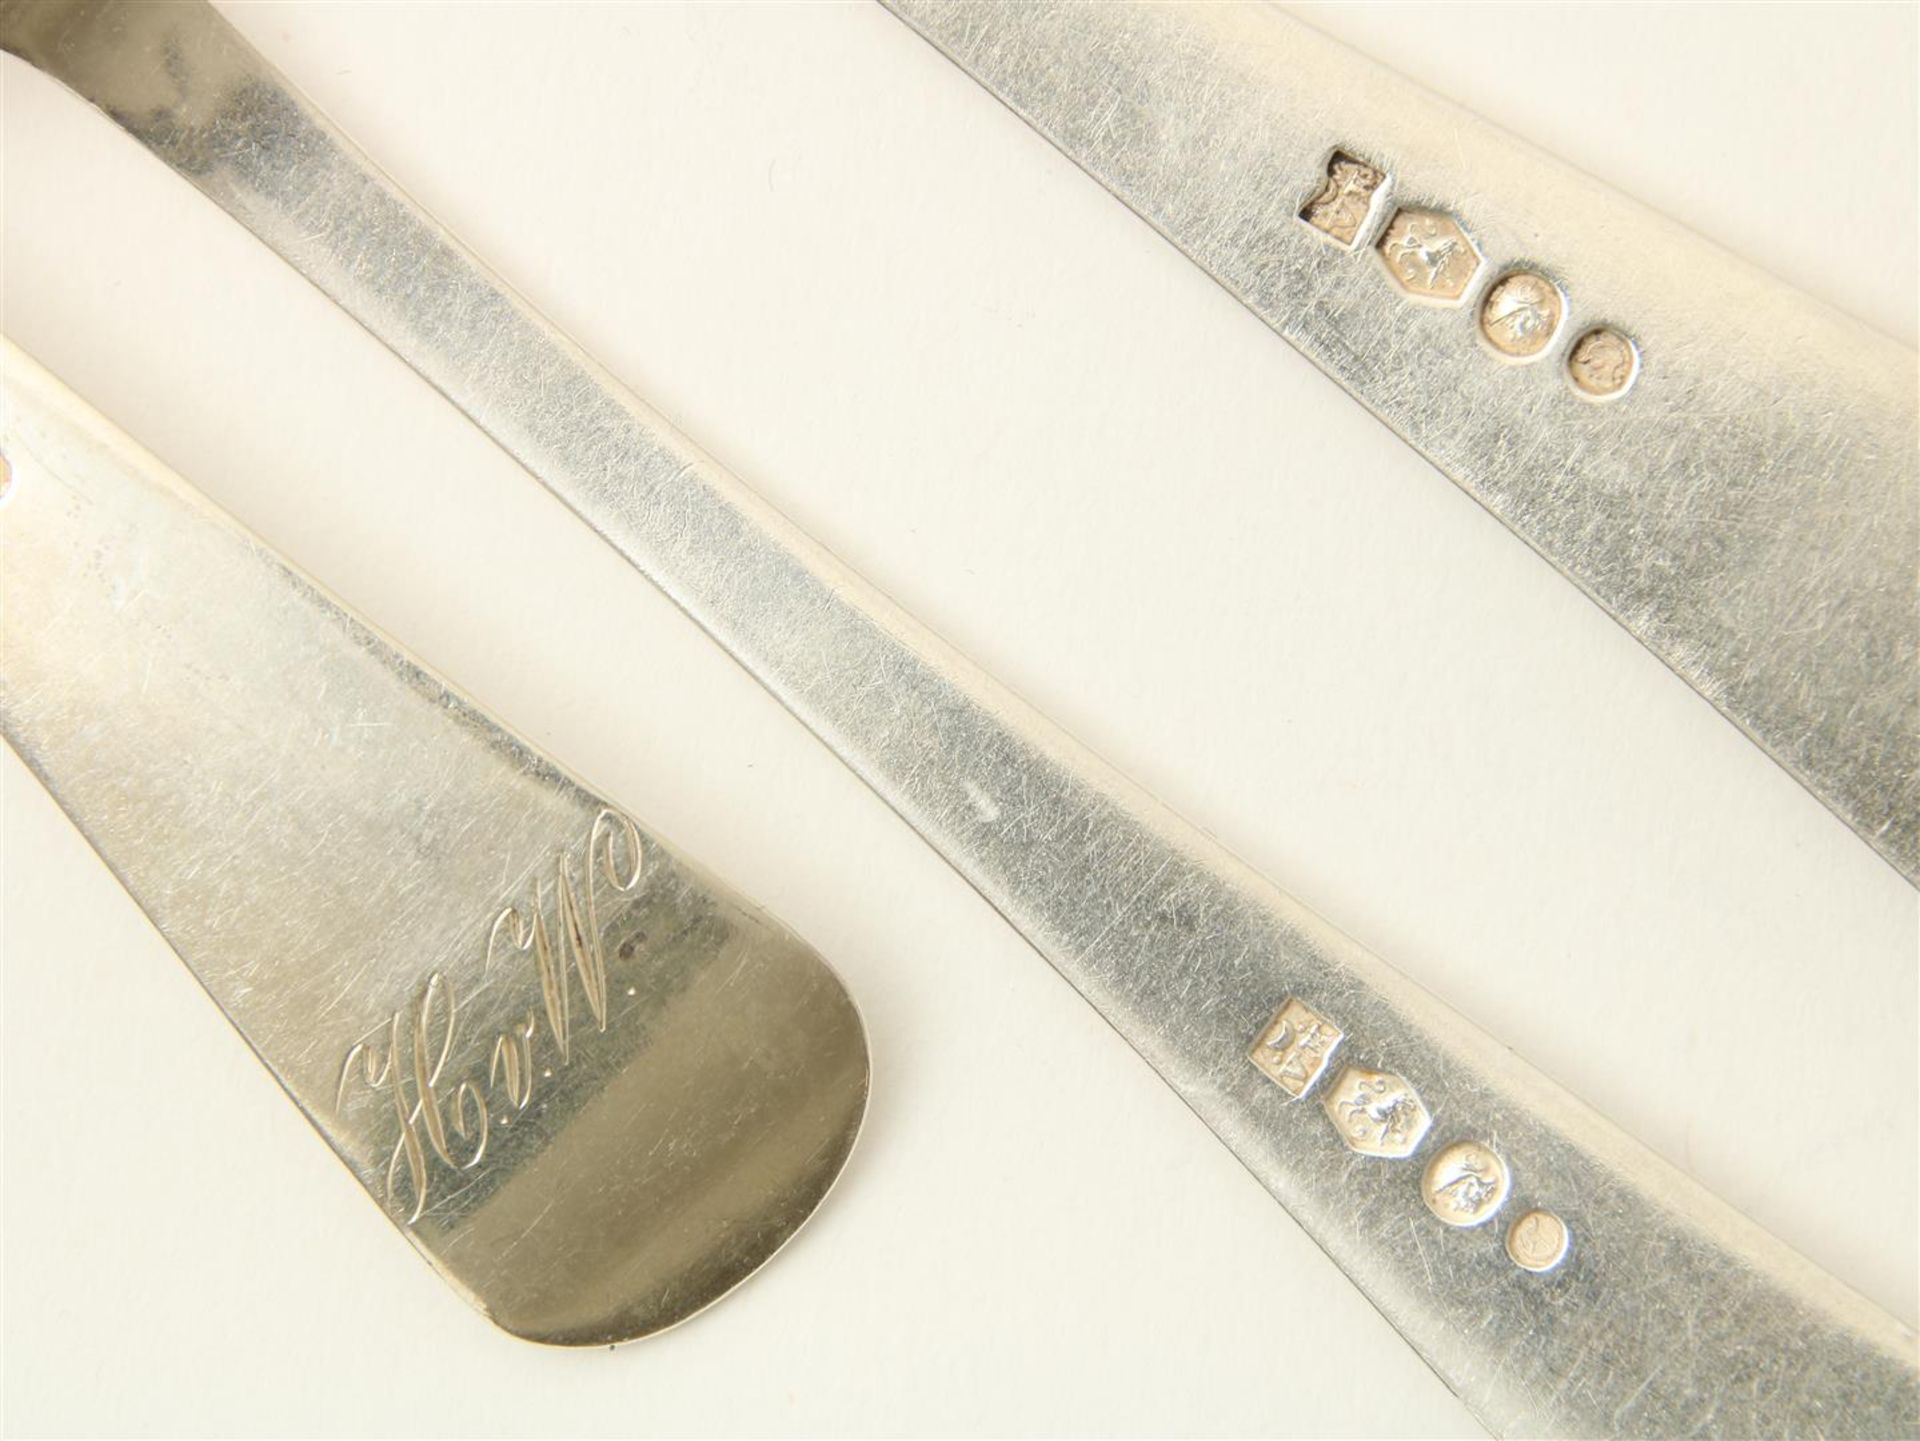 Haags Lofje silver cutlery - Bild 2 aus 2